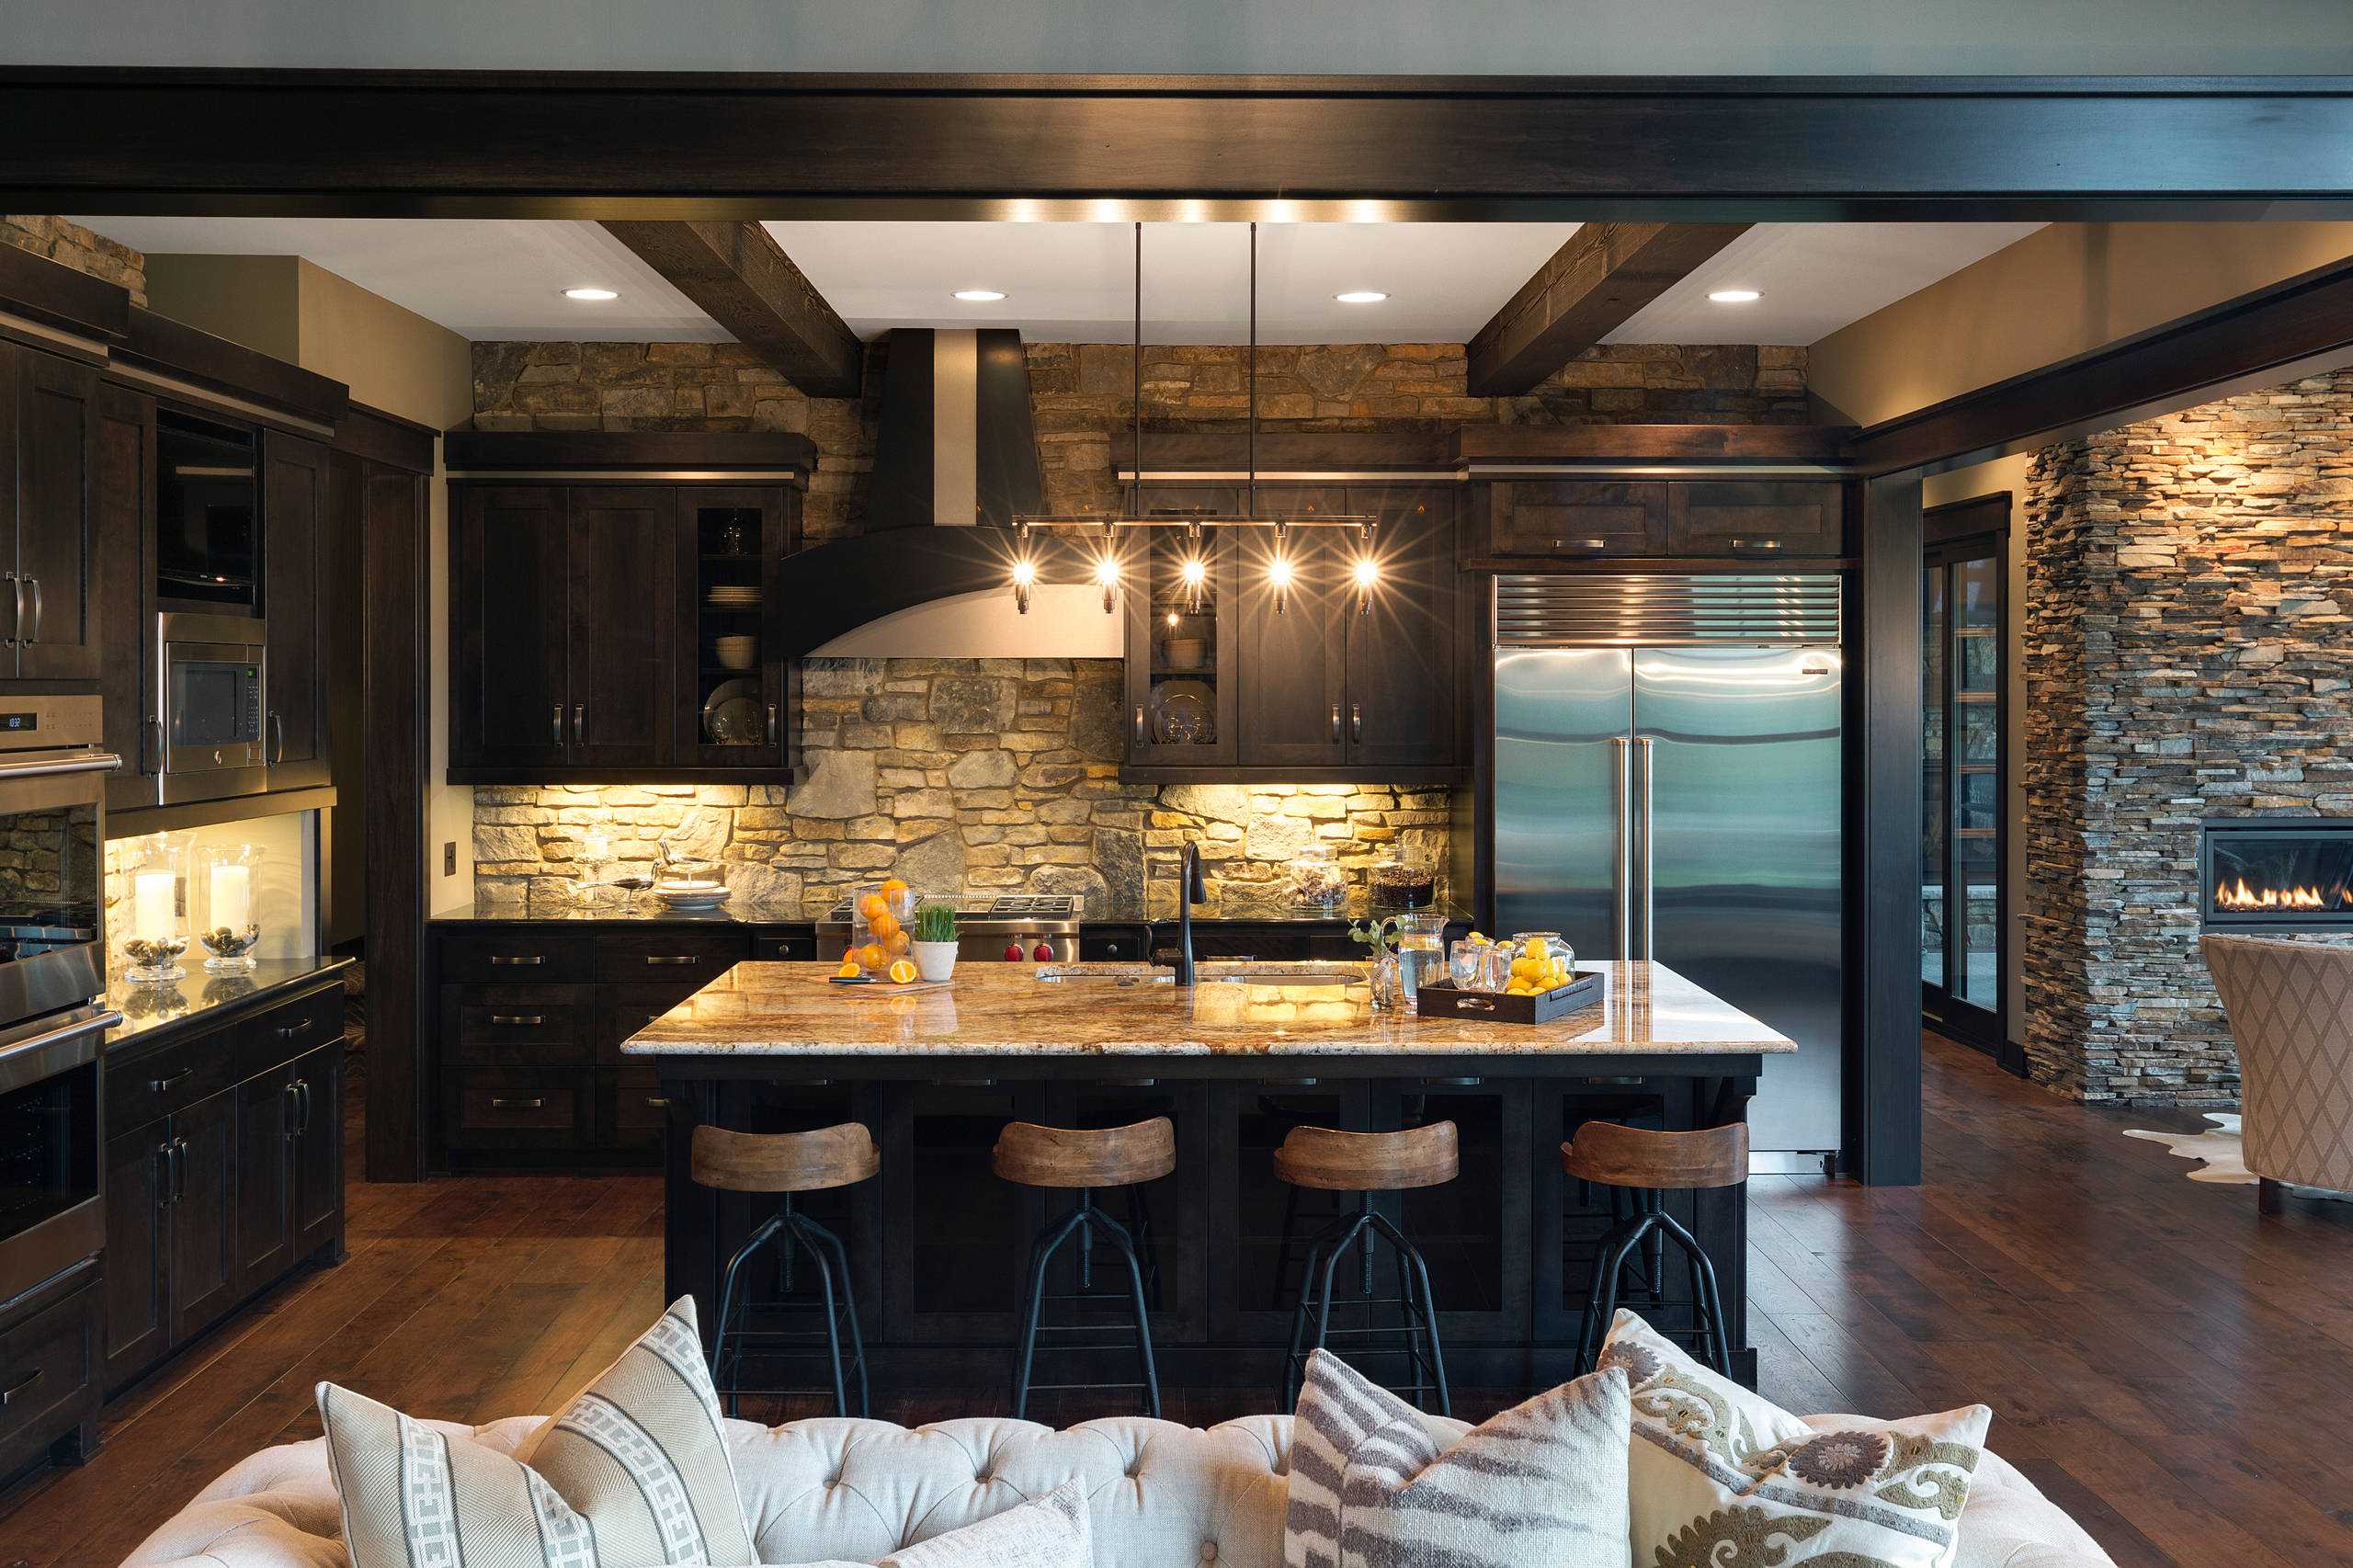 Furnished Interior Kitchen 2560x1706